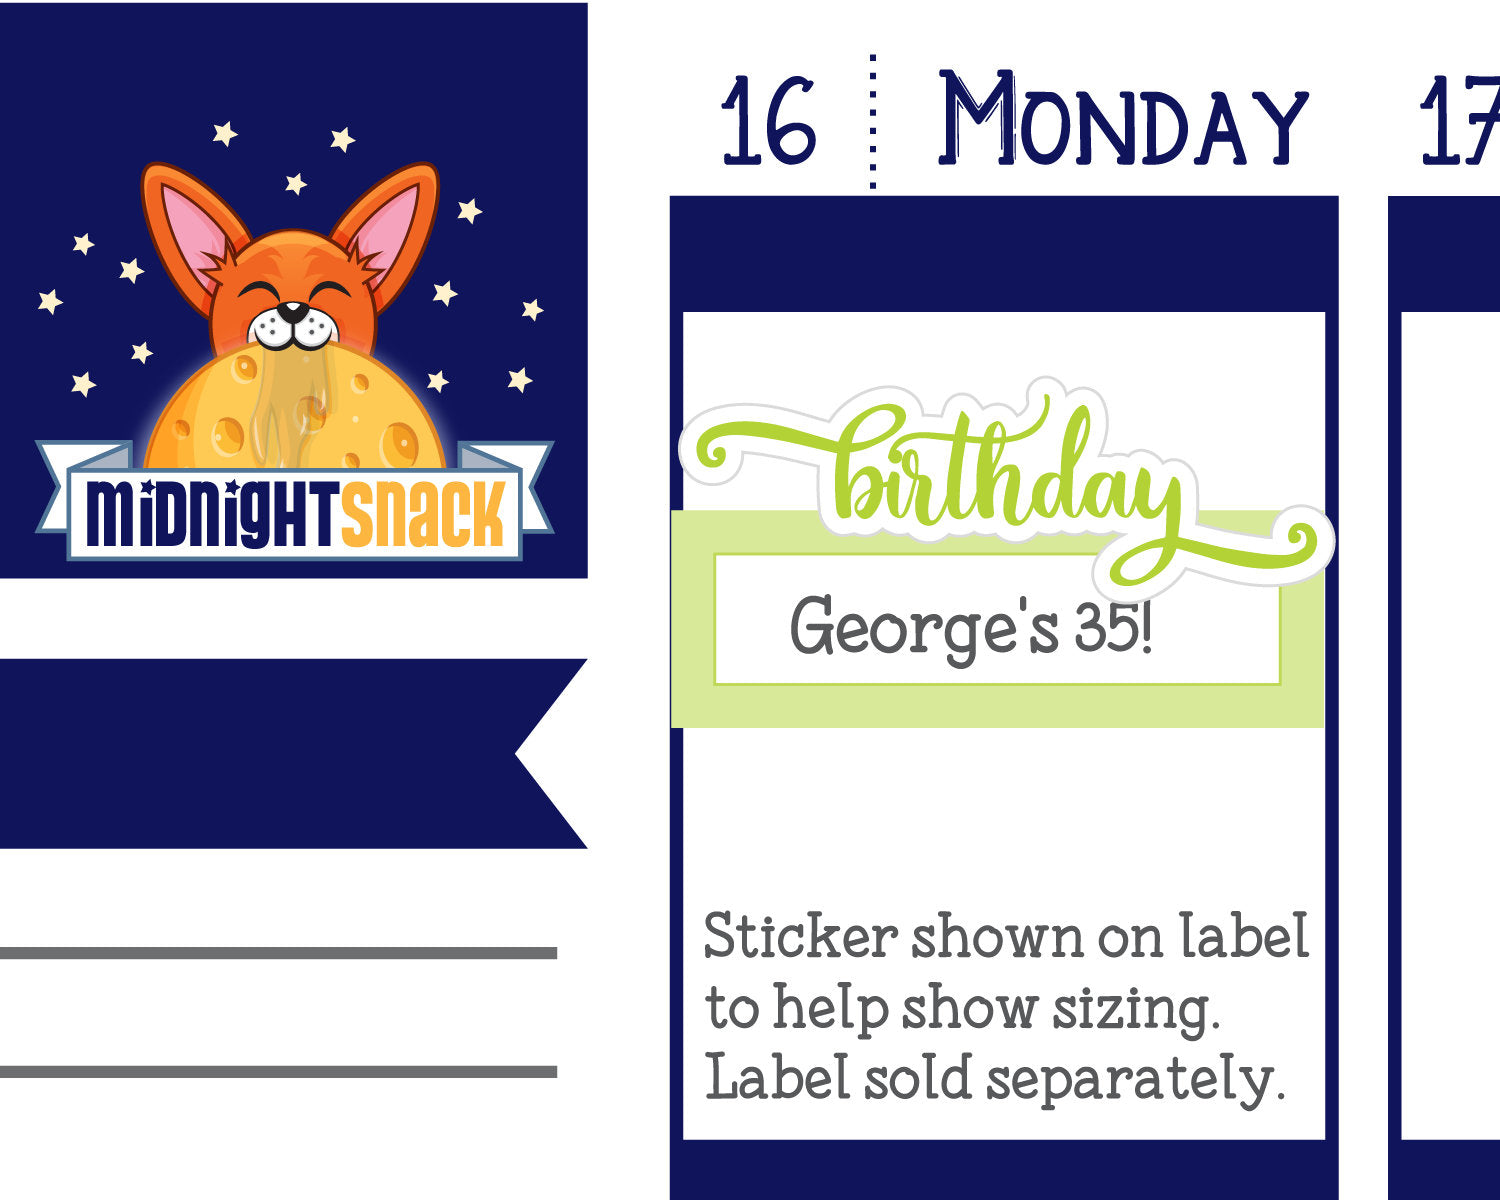 Birthday Script Word Planner Stickers Midnight Snack Planner